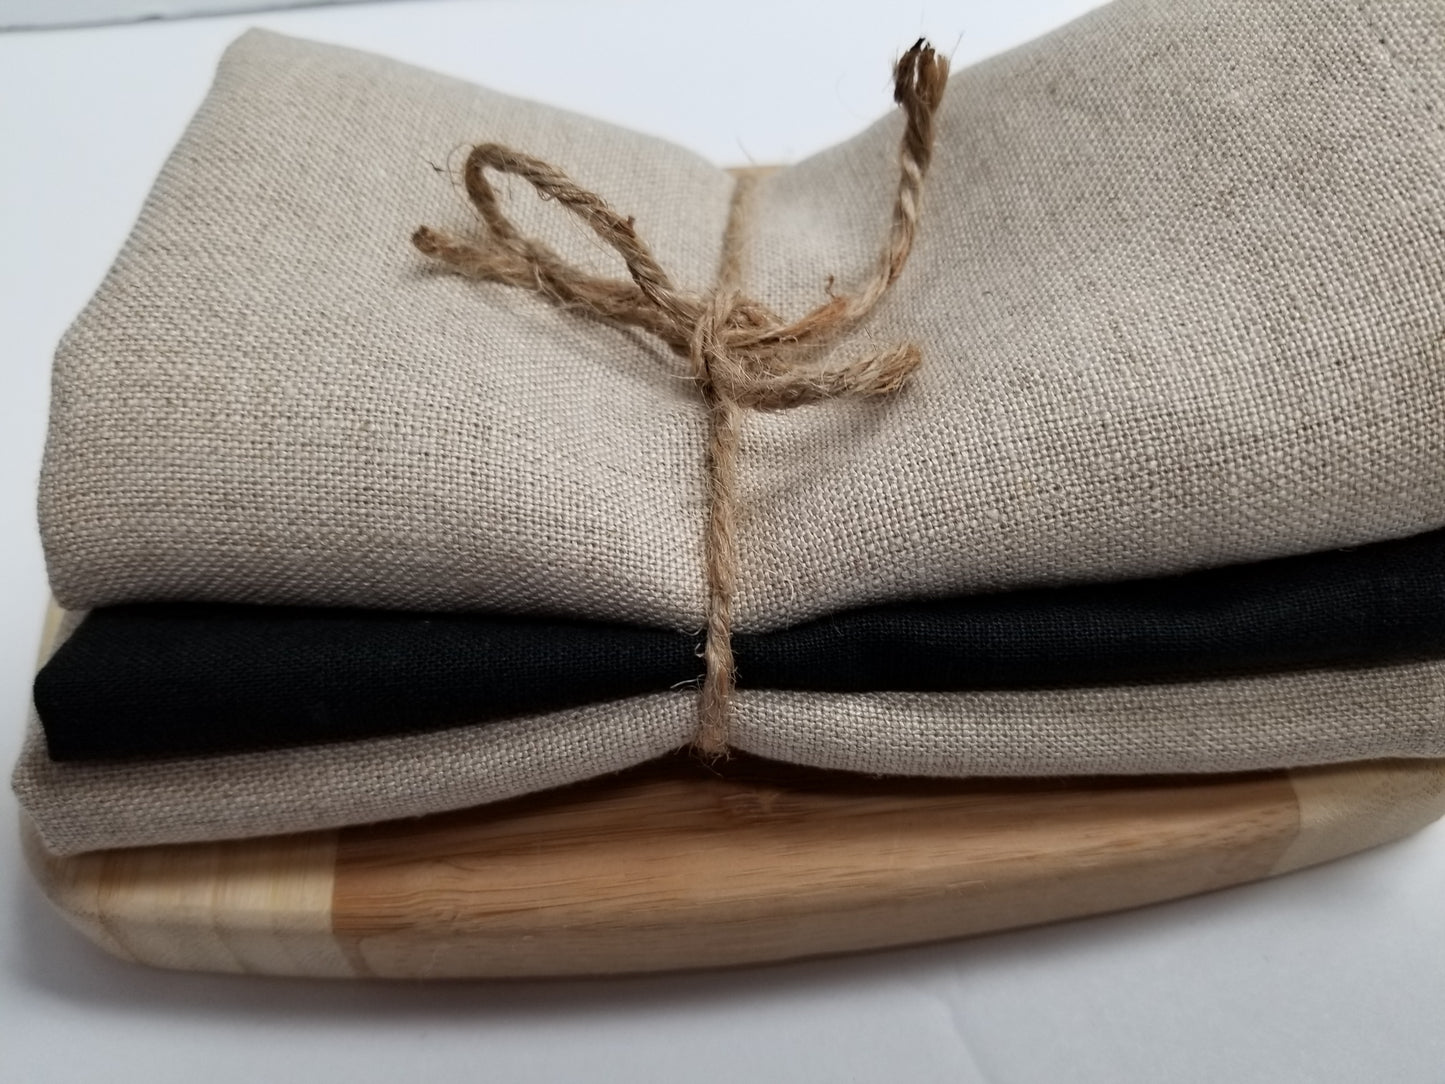 Linen Wash Cloth Set/3